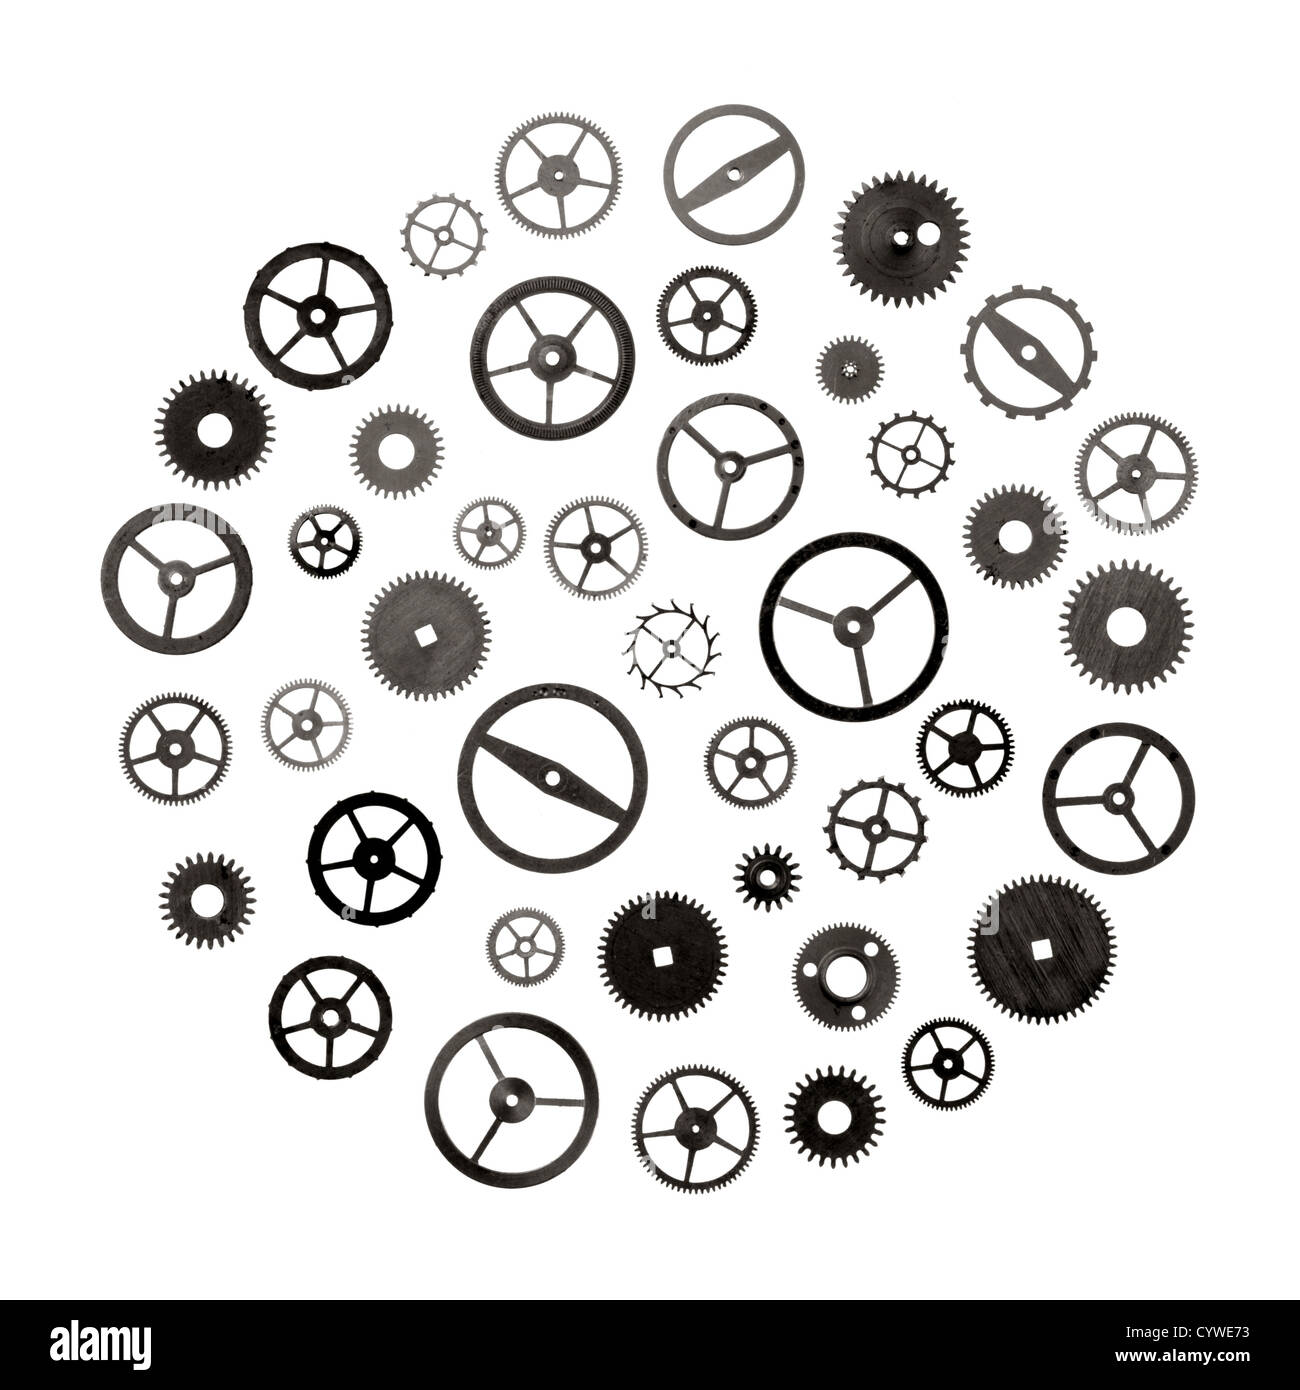 Pezzi di ricambio per orologi: ingranaggi ruote dentate ruote Foto stock -  Alamy